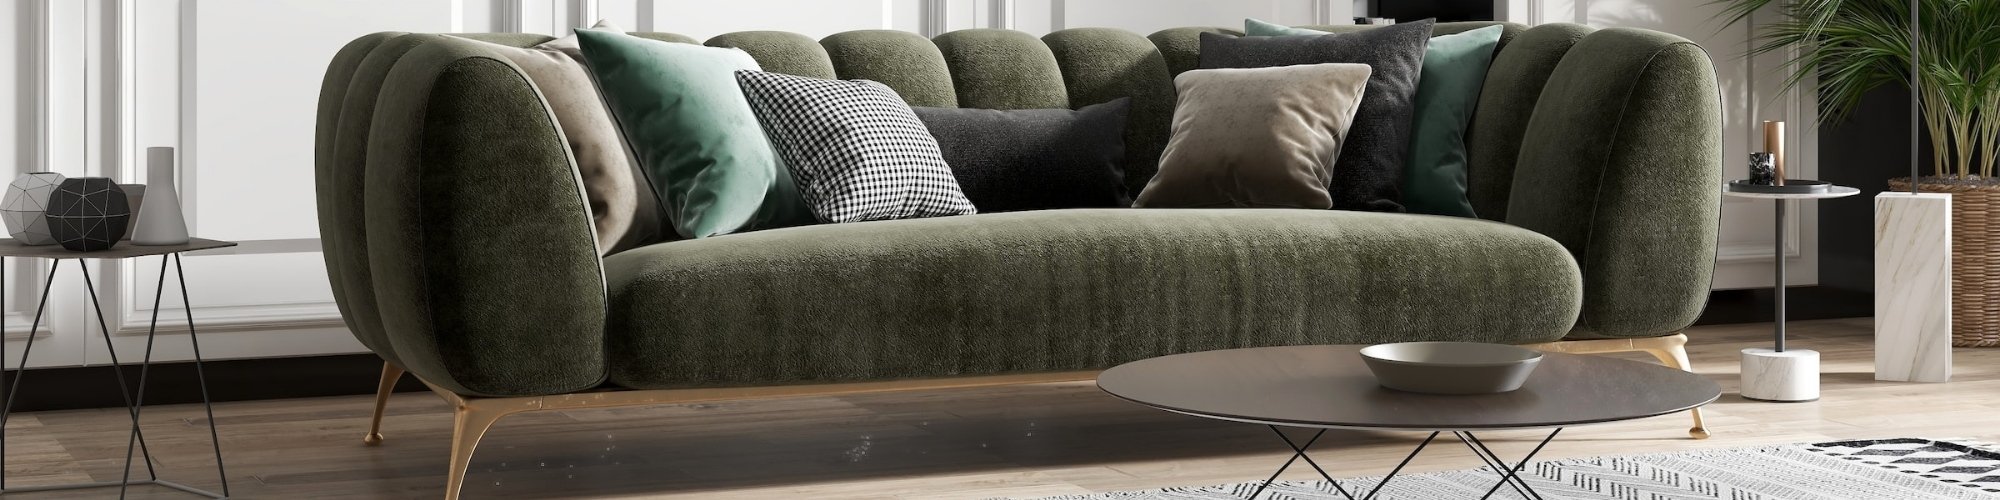 Stylish living room with green velvet sofa and light hardwood floors